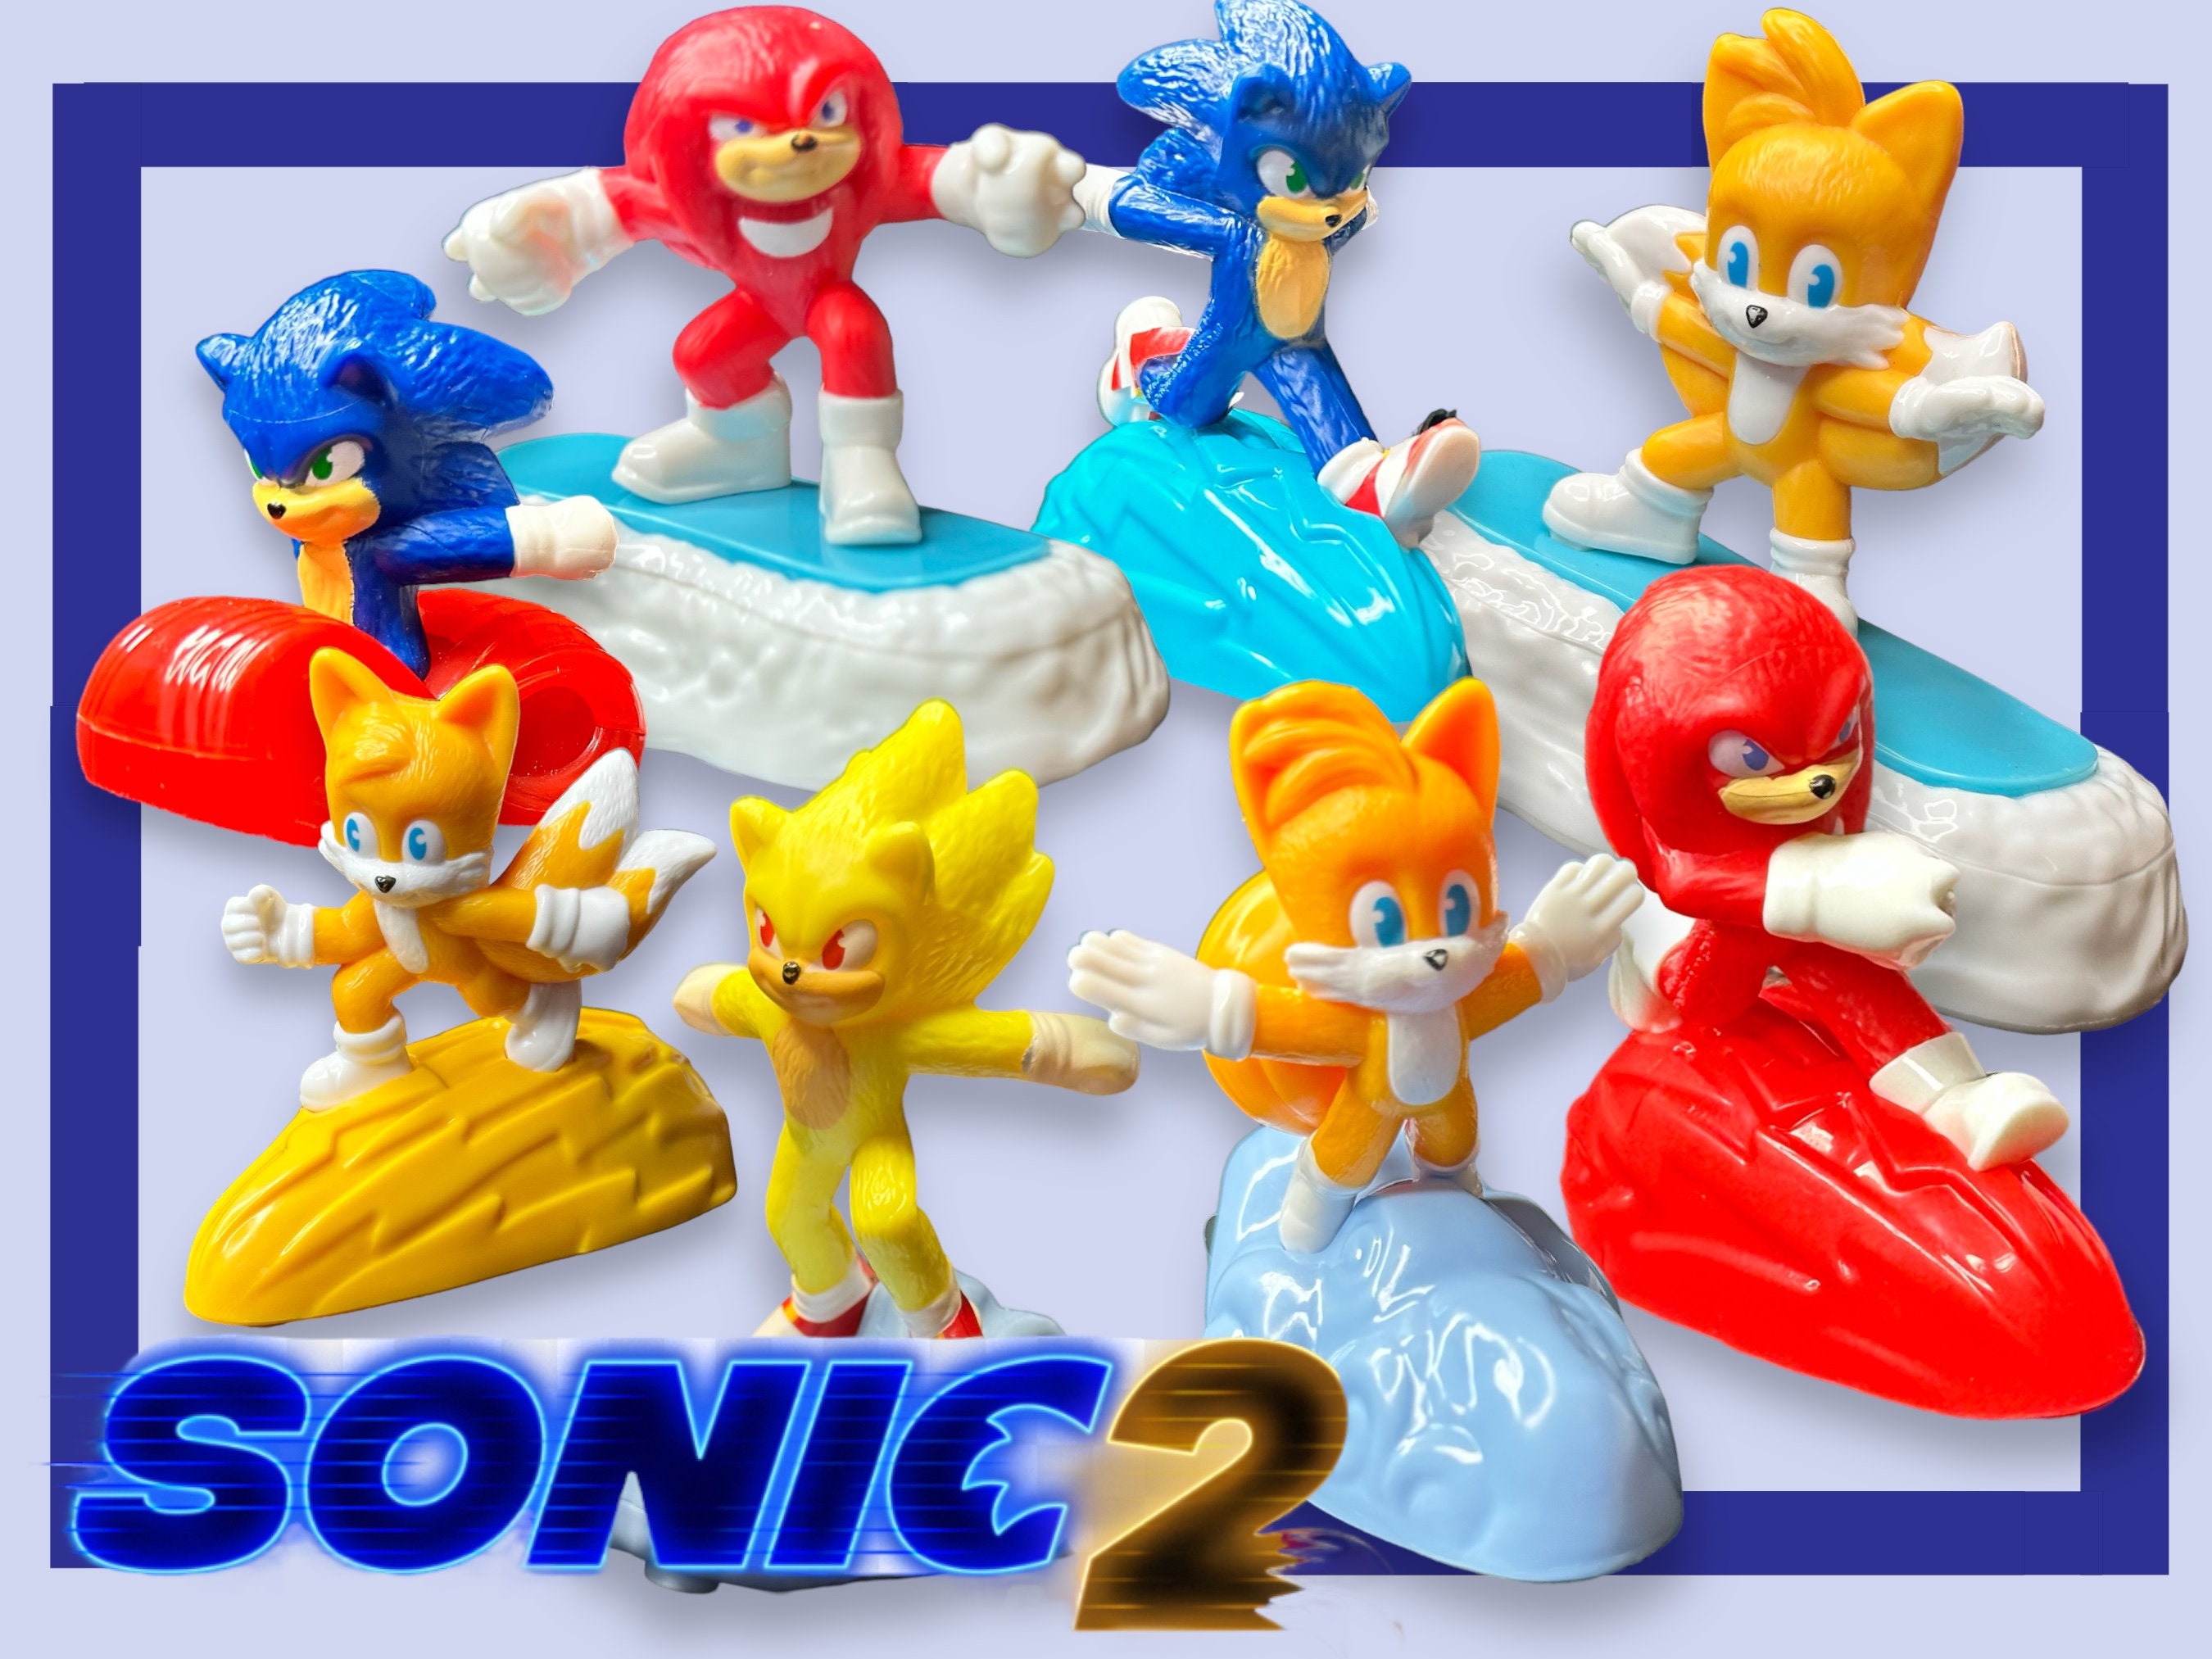 2 Bonecos Sonic 2 Mcdonald S, Comprar Novos & Usados